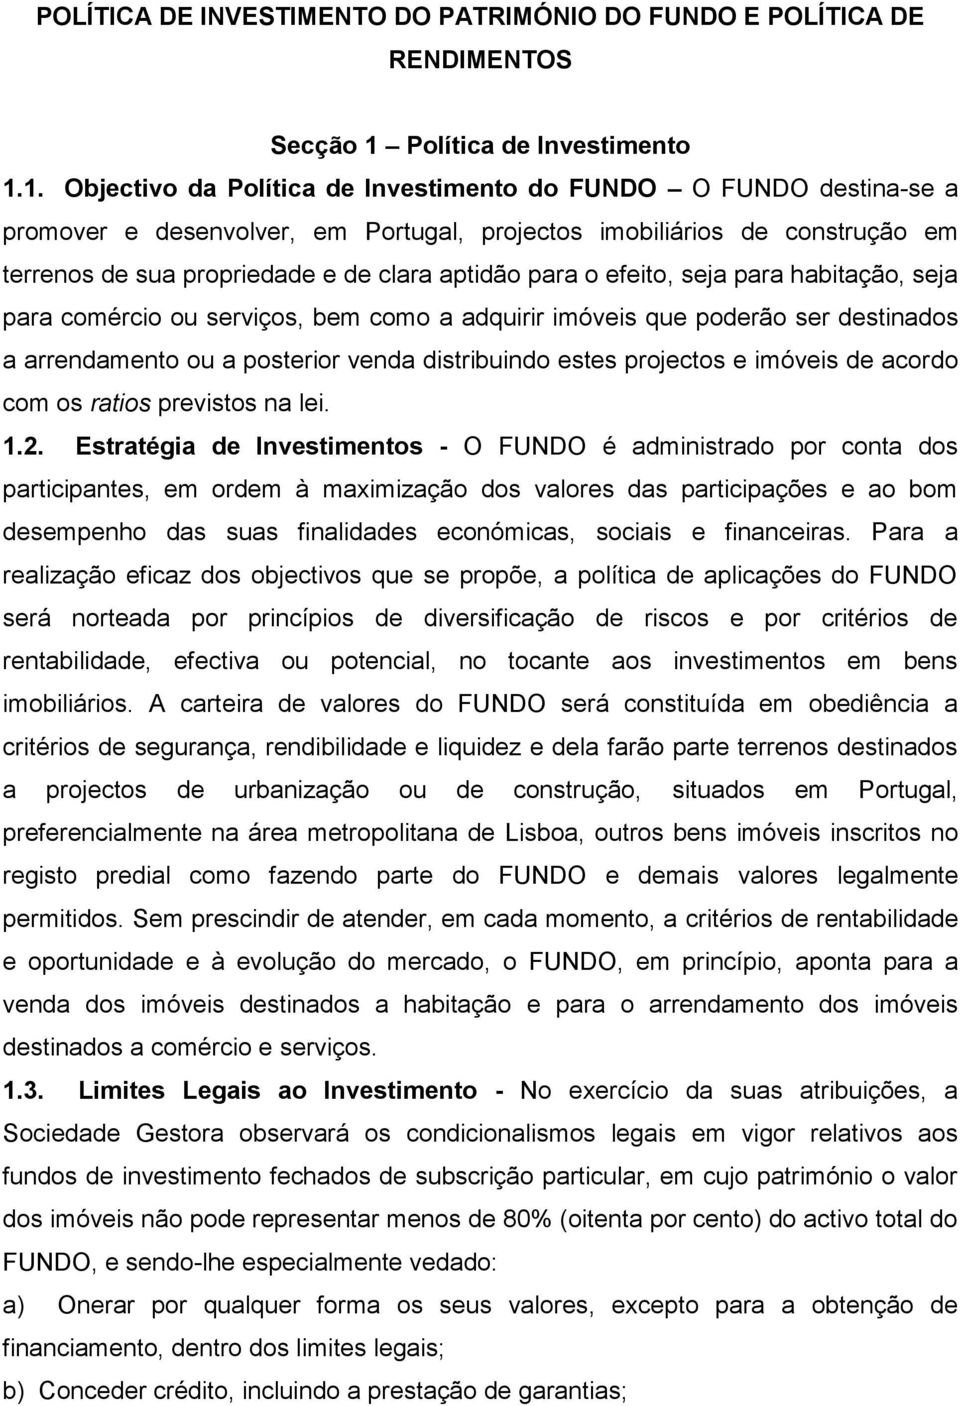 1. Objectivo da Política de Investimento do FUNDO O FUNDO destina-se a promover e desenvolver, em Portugal, projectos imobiliários de construção em terrenos de sua propriedade e de clara aptidão para